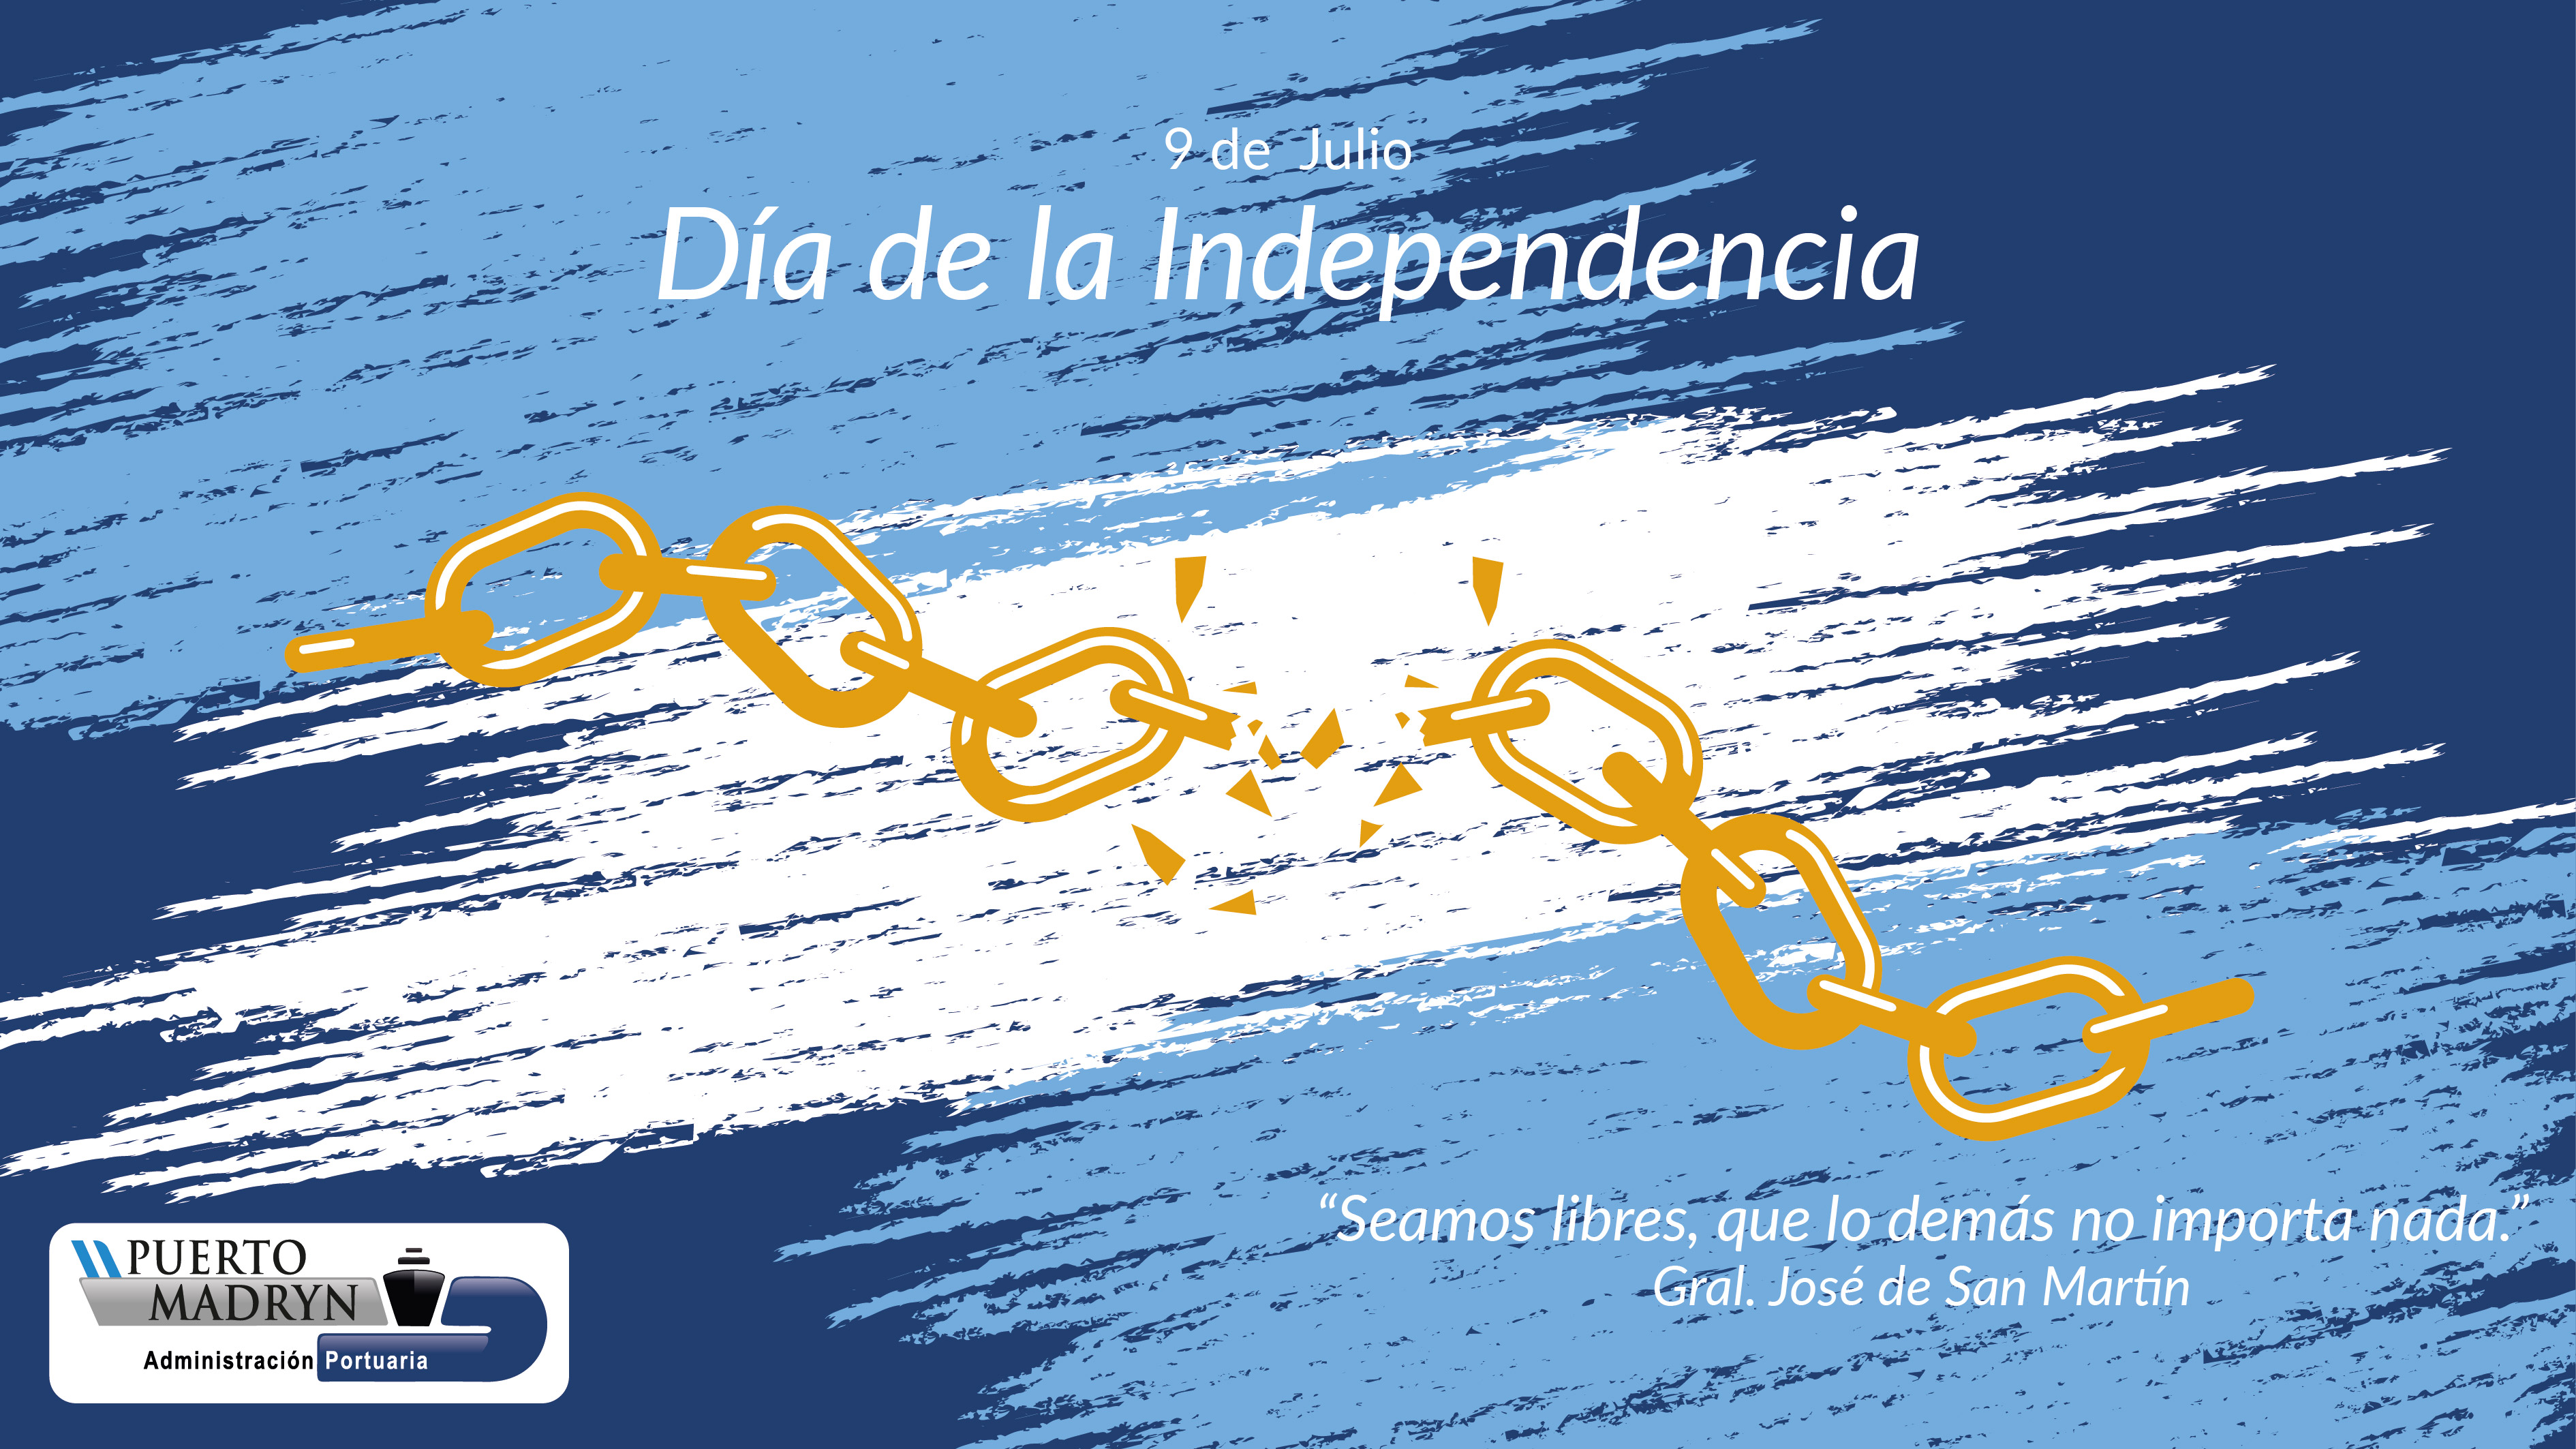 Soy Zulita, cómo están? - Página 2 Dia-de-la-Independencia-2020-01